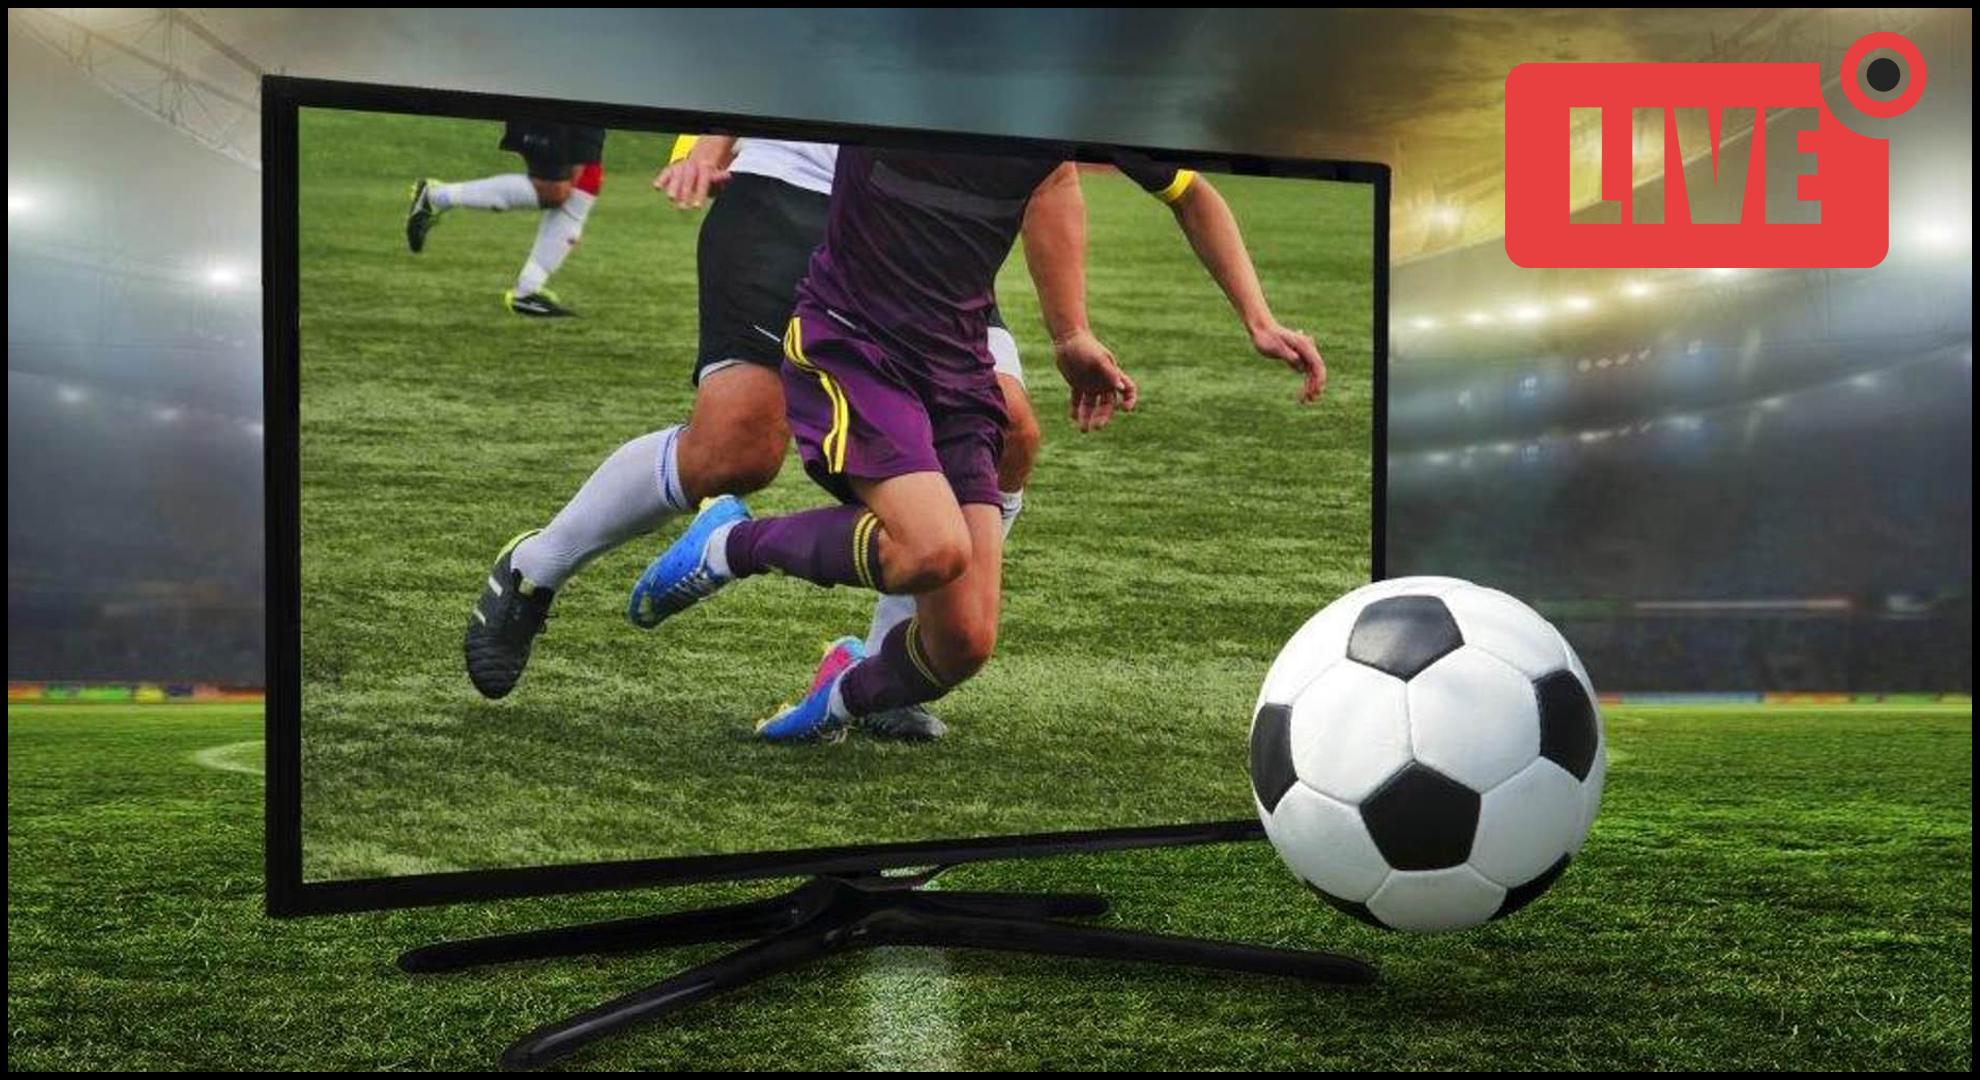 Live футбол спортивная. Телевизор футбол. Футбол на экране. Трансляция футбола на большом экране. Футбол на большом телевизоре.